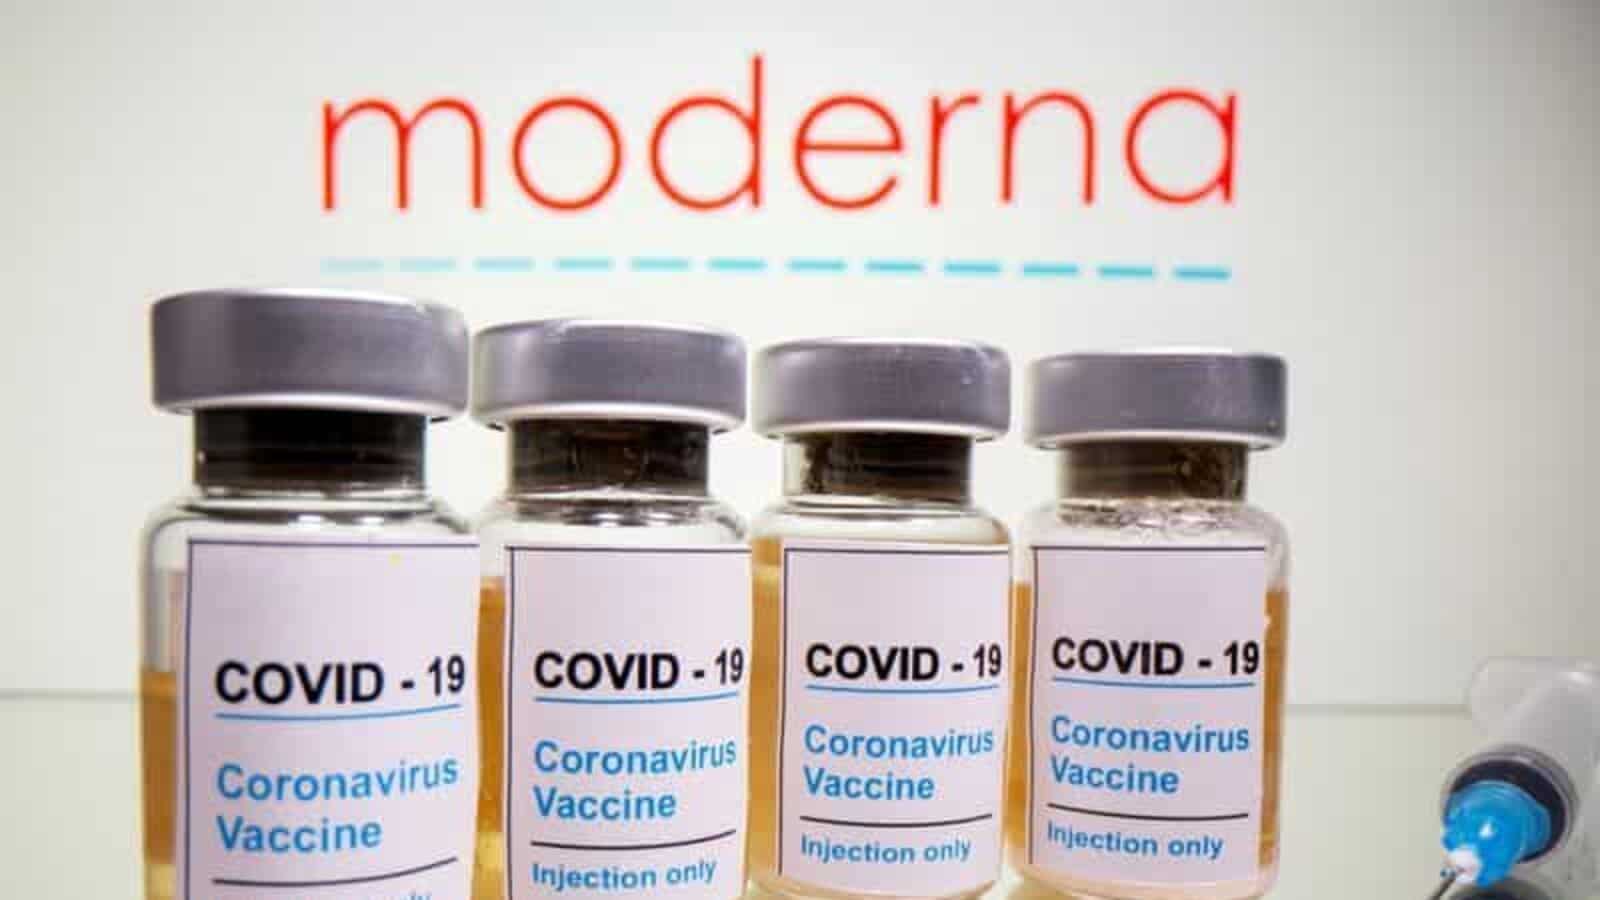 Moderna Bivalent Booster Vaccine Near Me Scheduling |COVID-19|